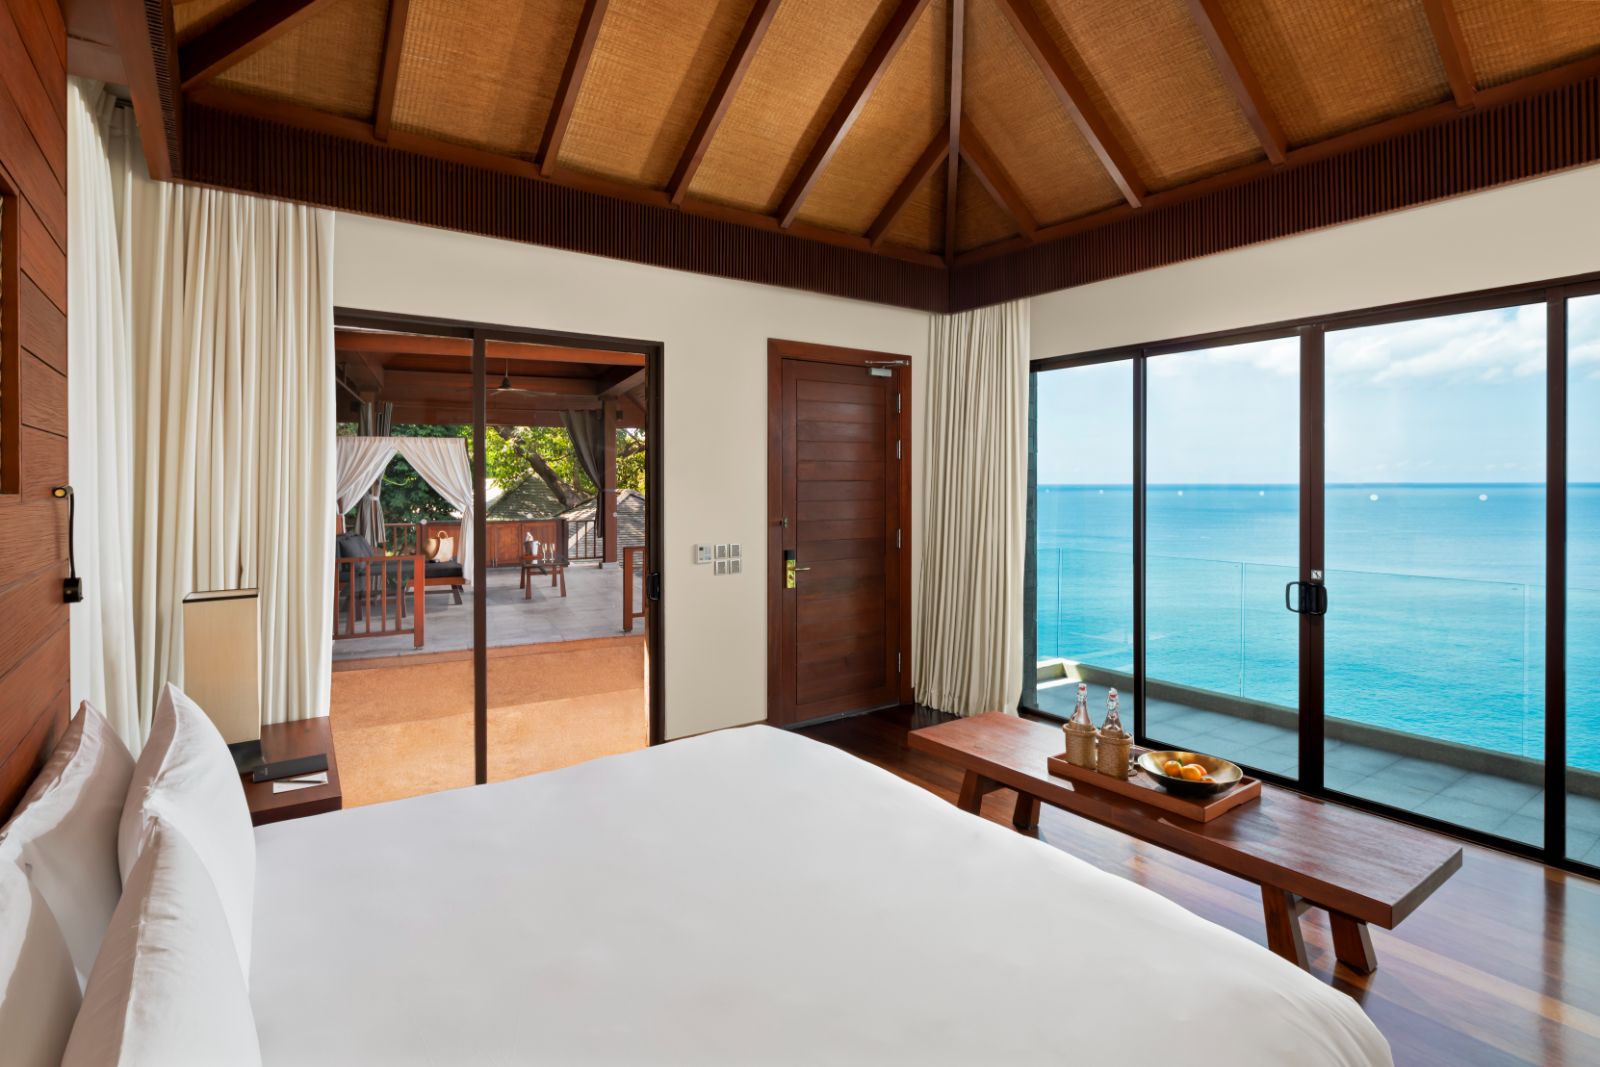 Cliff Pool Villa bedroom at Paresa resort in the Phuket region of Thailand